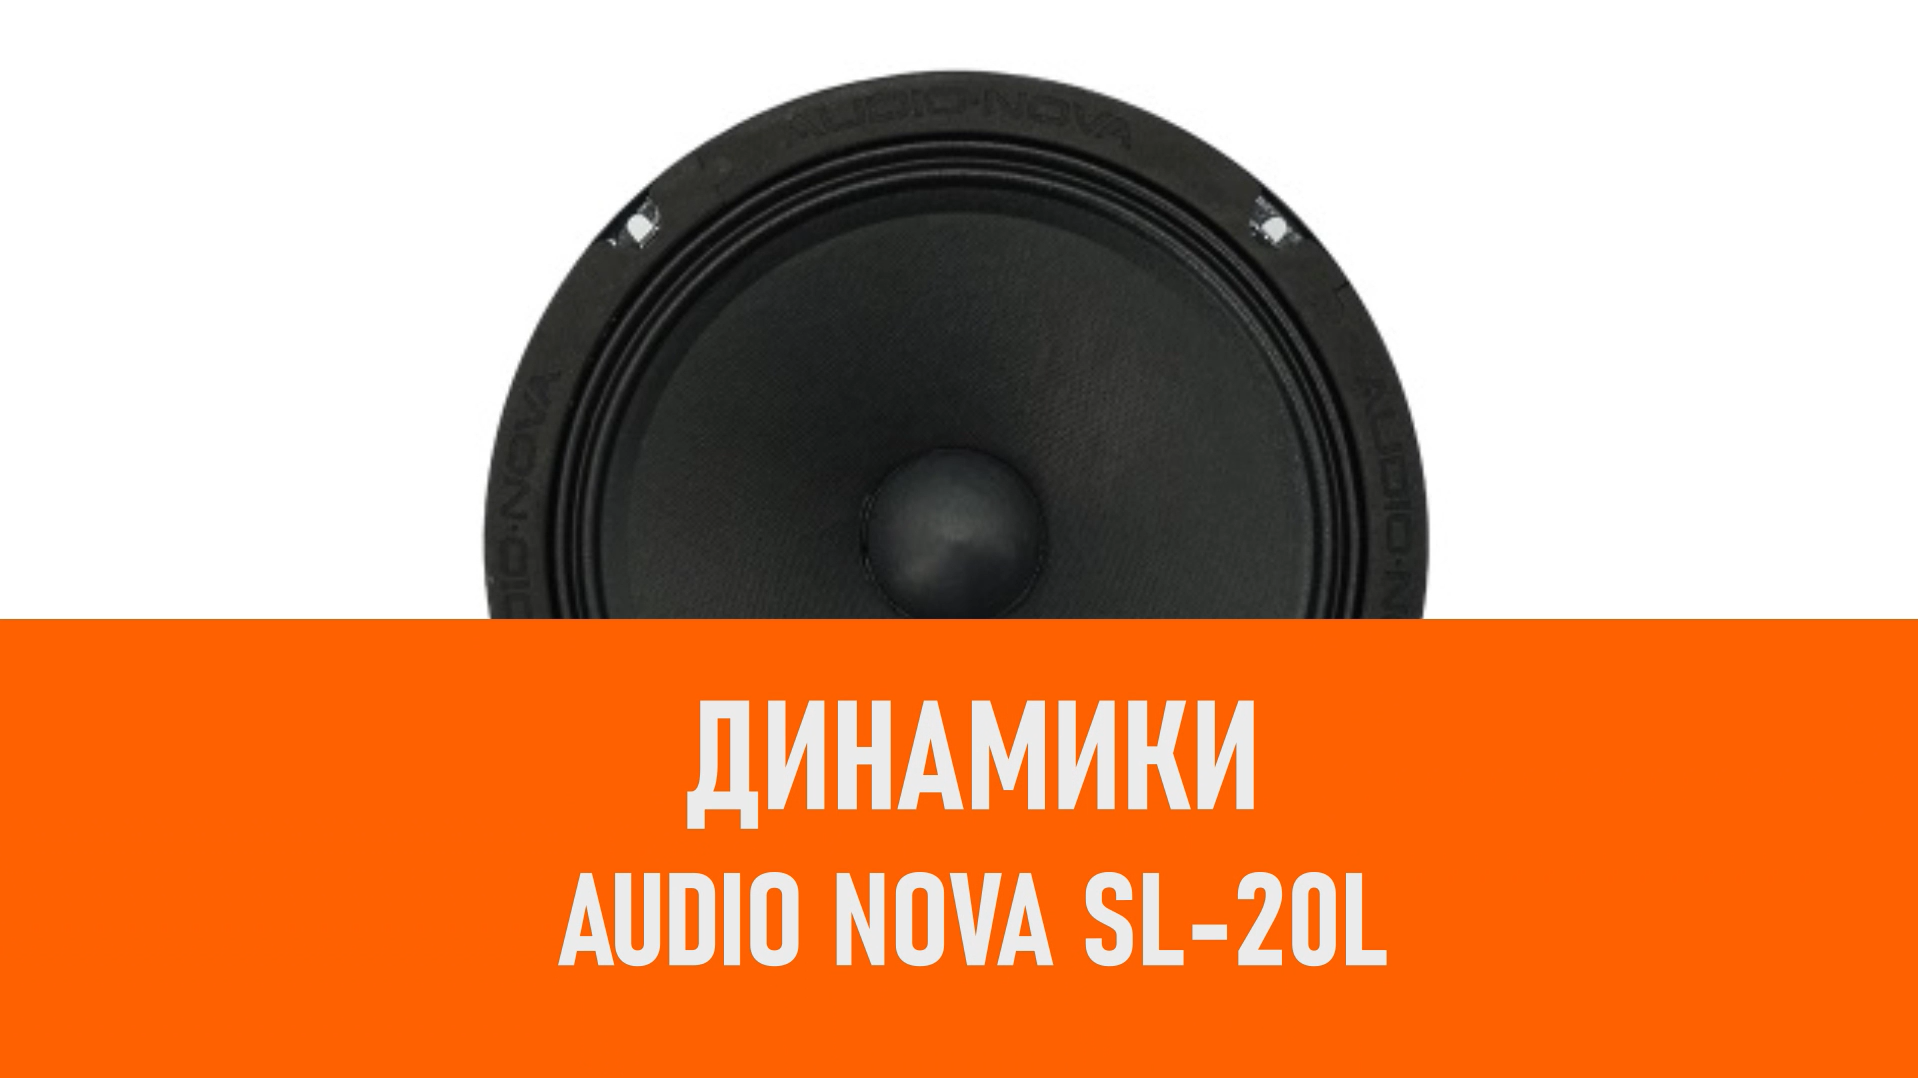 Распаковка динамиков AUDIO NOVA SL-20L